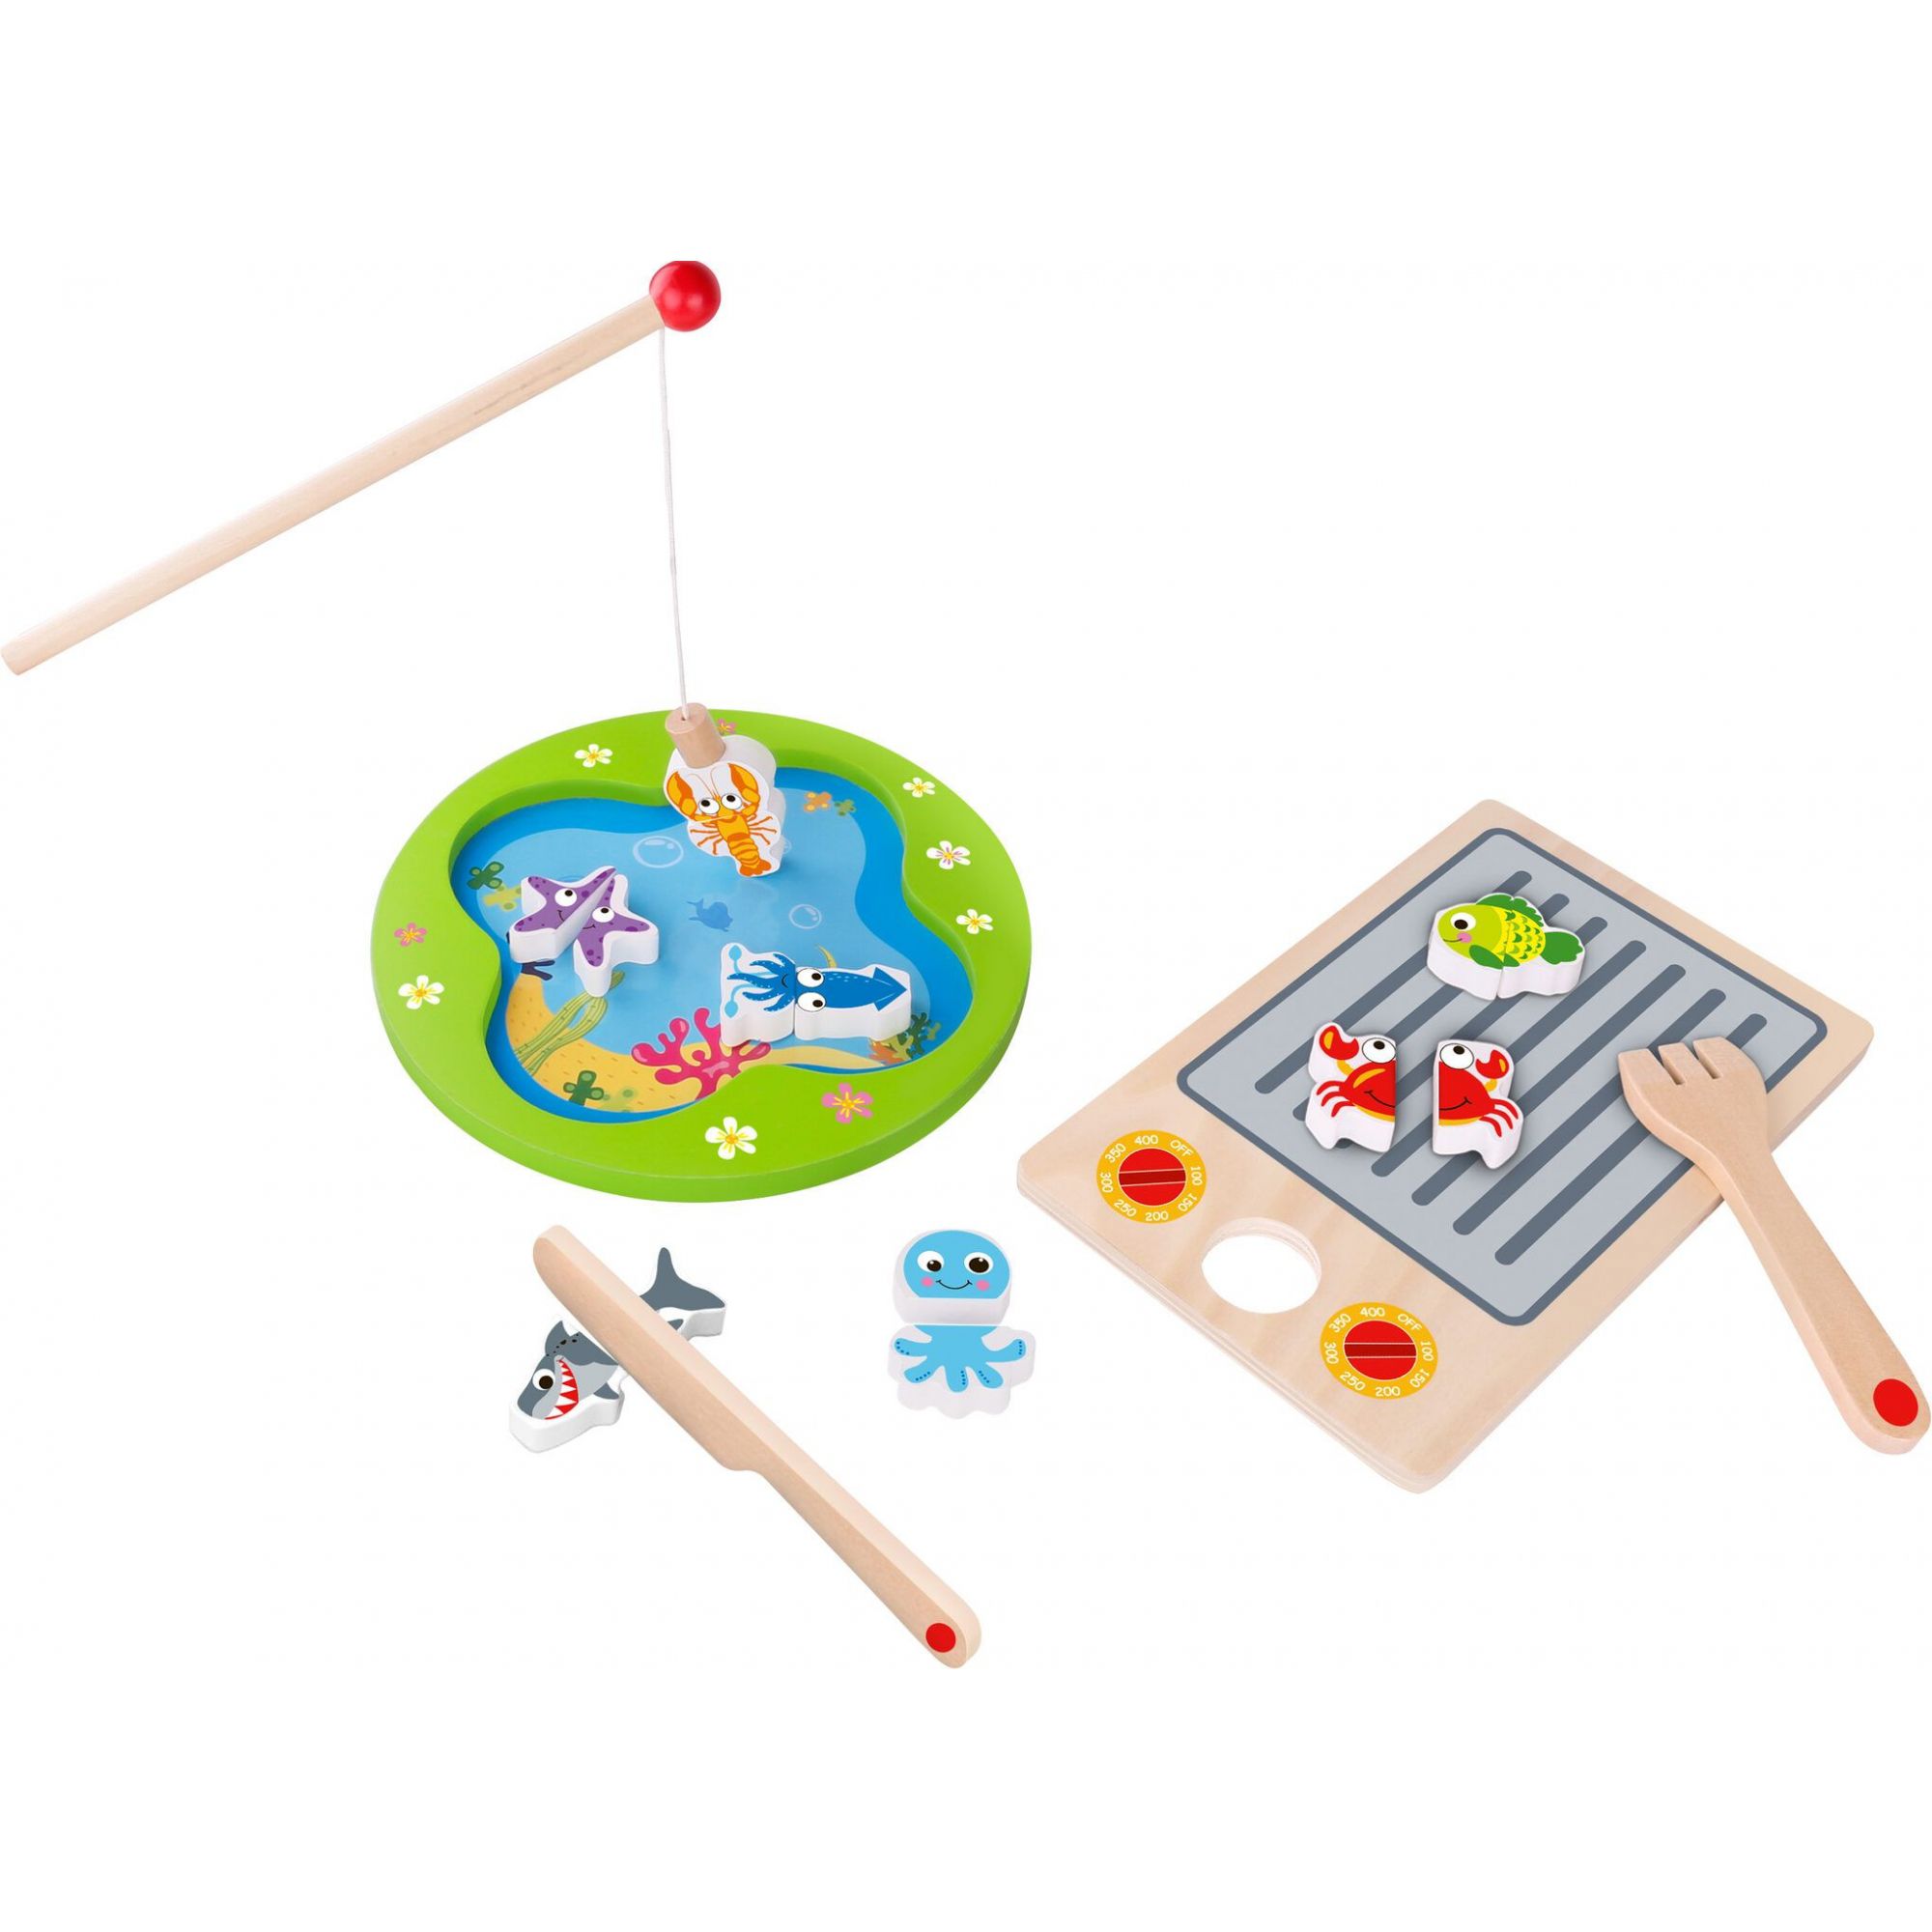 Brinquedo Pescar e Grelhar Magnético - Tooky Toy